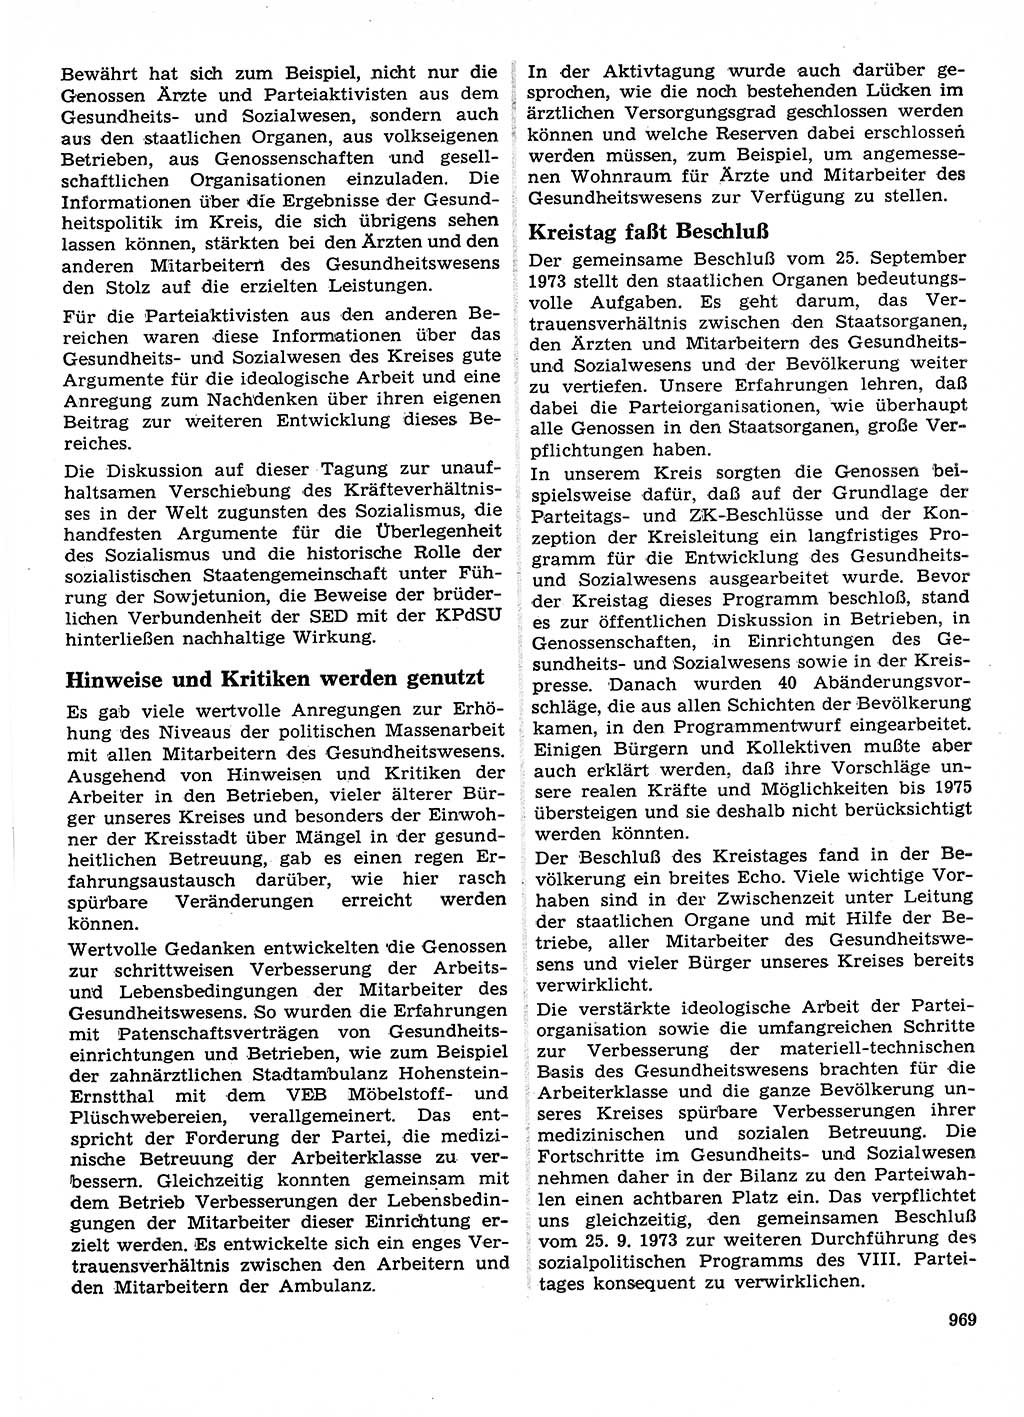 Neuer Weg (NW), Organ des Zentralkomitees (ZK) der SED (Sozialistische Einheitspartei Deutschlands) für Fragen des Parteilebens, 28. Jahrgang [Deutsche Demokratische Republik (DDR)] 1973, Seite 969 (NW ZK SED DDR 1973, S. 969)